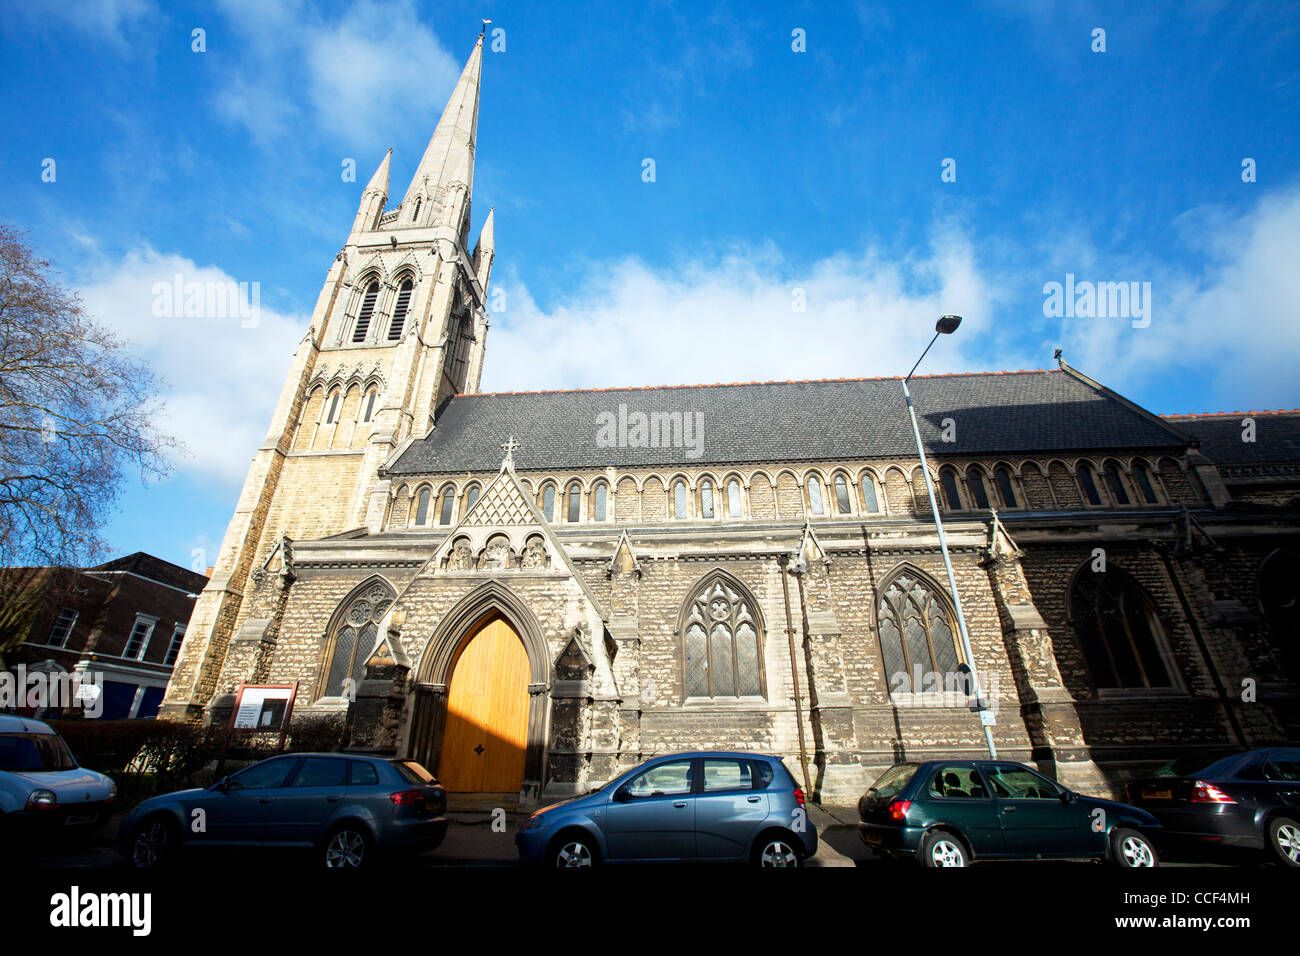 La Ville de Lincoln, Lincolnshire, Saint Swithin's Church, Lincoln qui a été une fois décrite comme 'la plus belle des églises modernes de Lincoln Banque D'Images